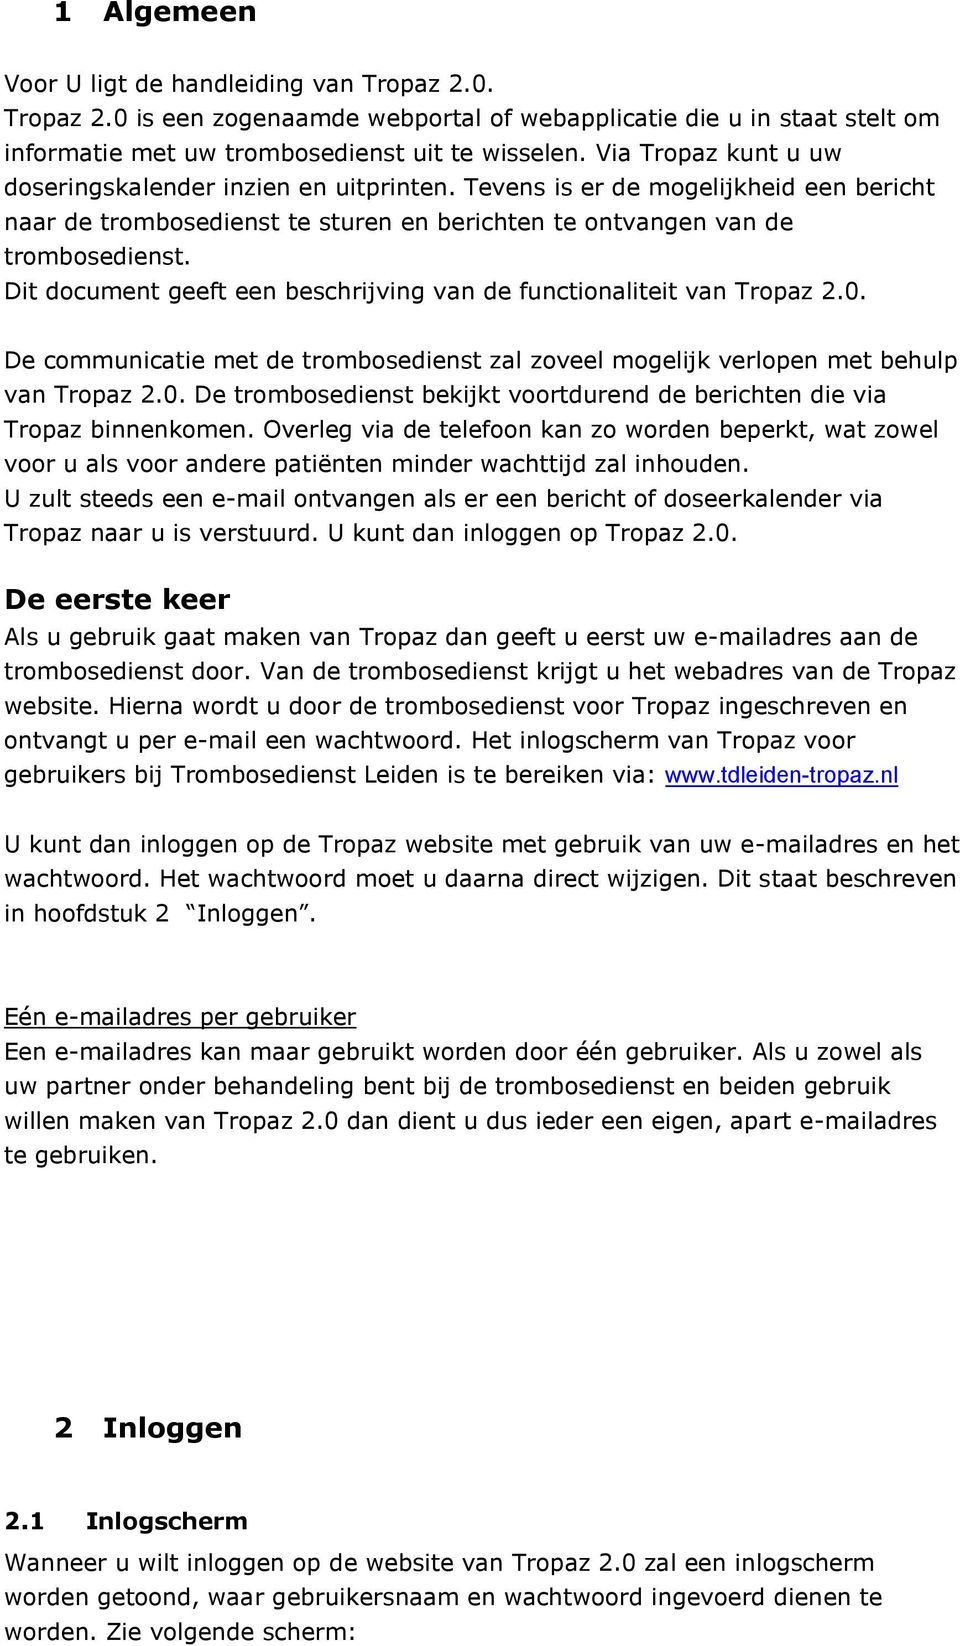 Dit document geeft een beschrijving van de functionaliteit van Tropaz 2.0. De communicatie met de trombosedienst zal zoveel mogelijk verlopen met behulp van Tropaz 2.0. De trombosedienst bekijkt voortdurend de berichten die via Tropaz binnenkomen.